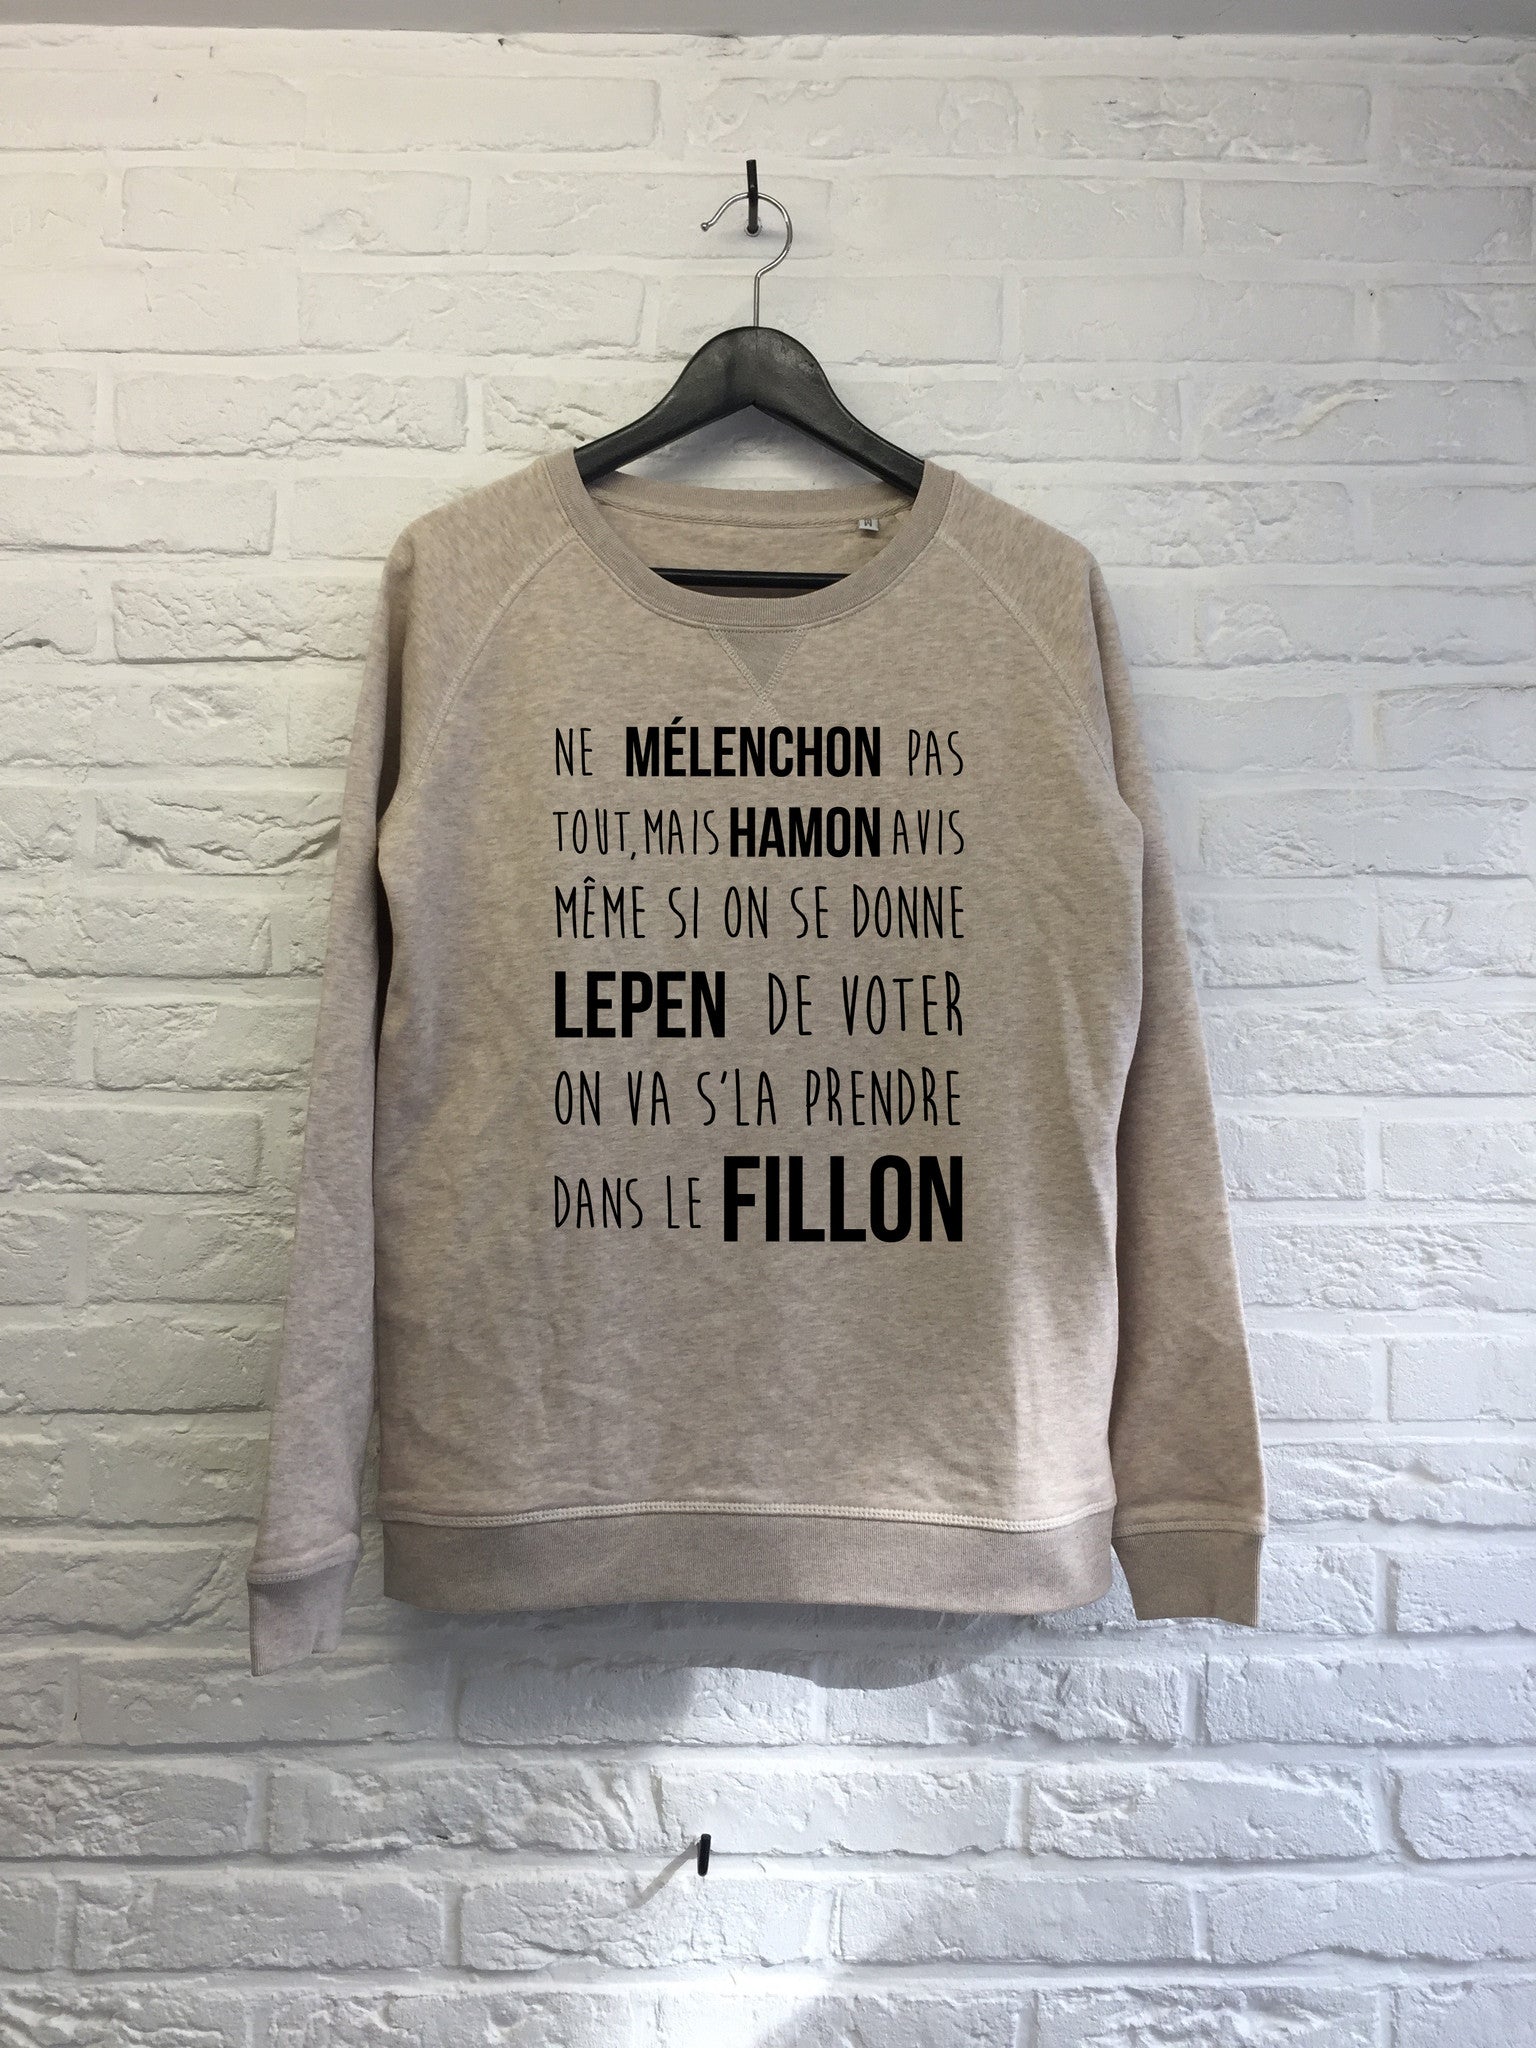 Dans le Fillon - Sweat - Femme-Sweat shirts-Atelier Amelot